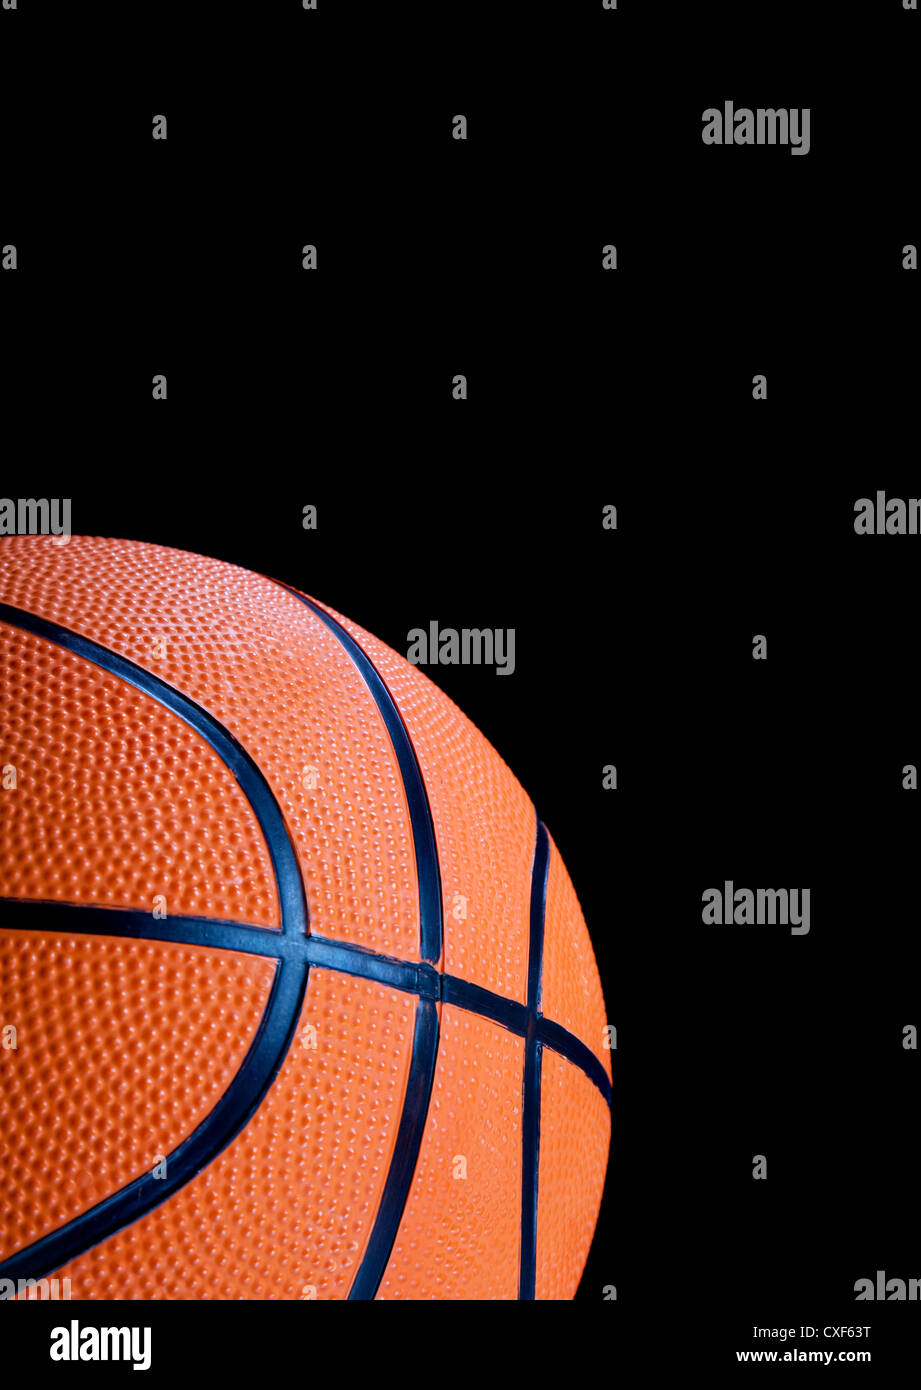 La pallacanestro su uno sfondo nero con spazio di copia Foto Stock